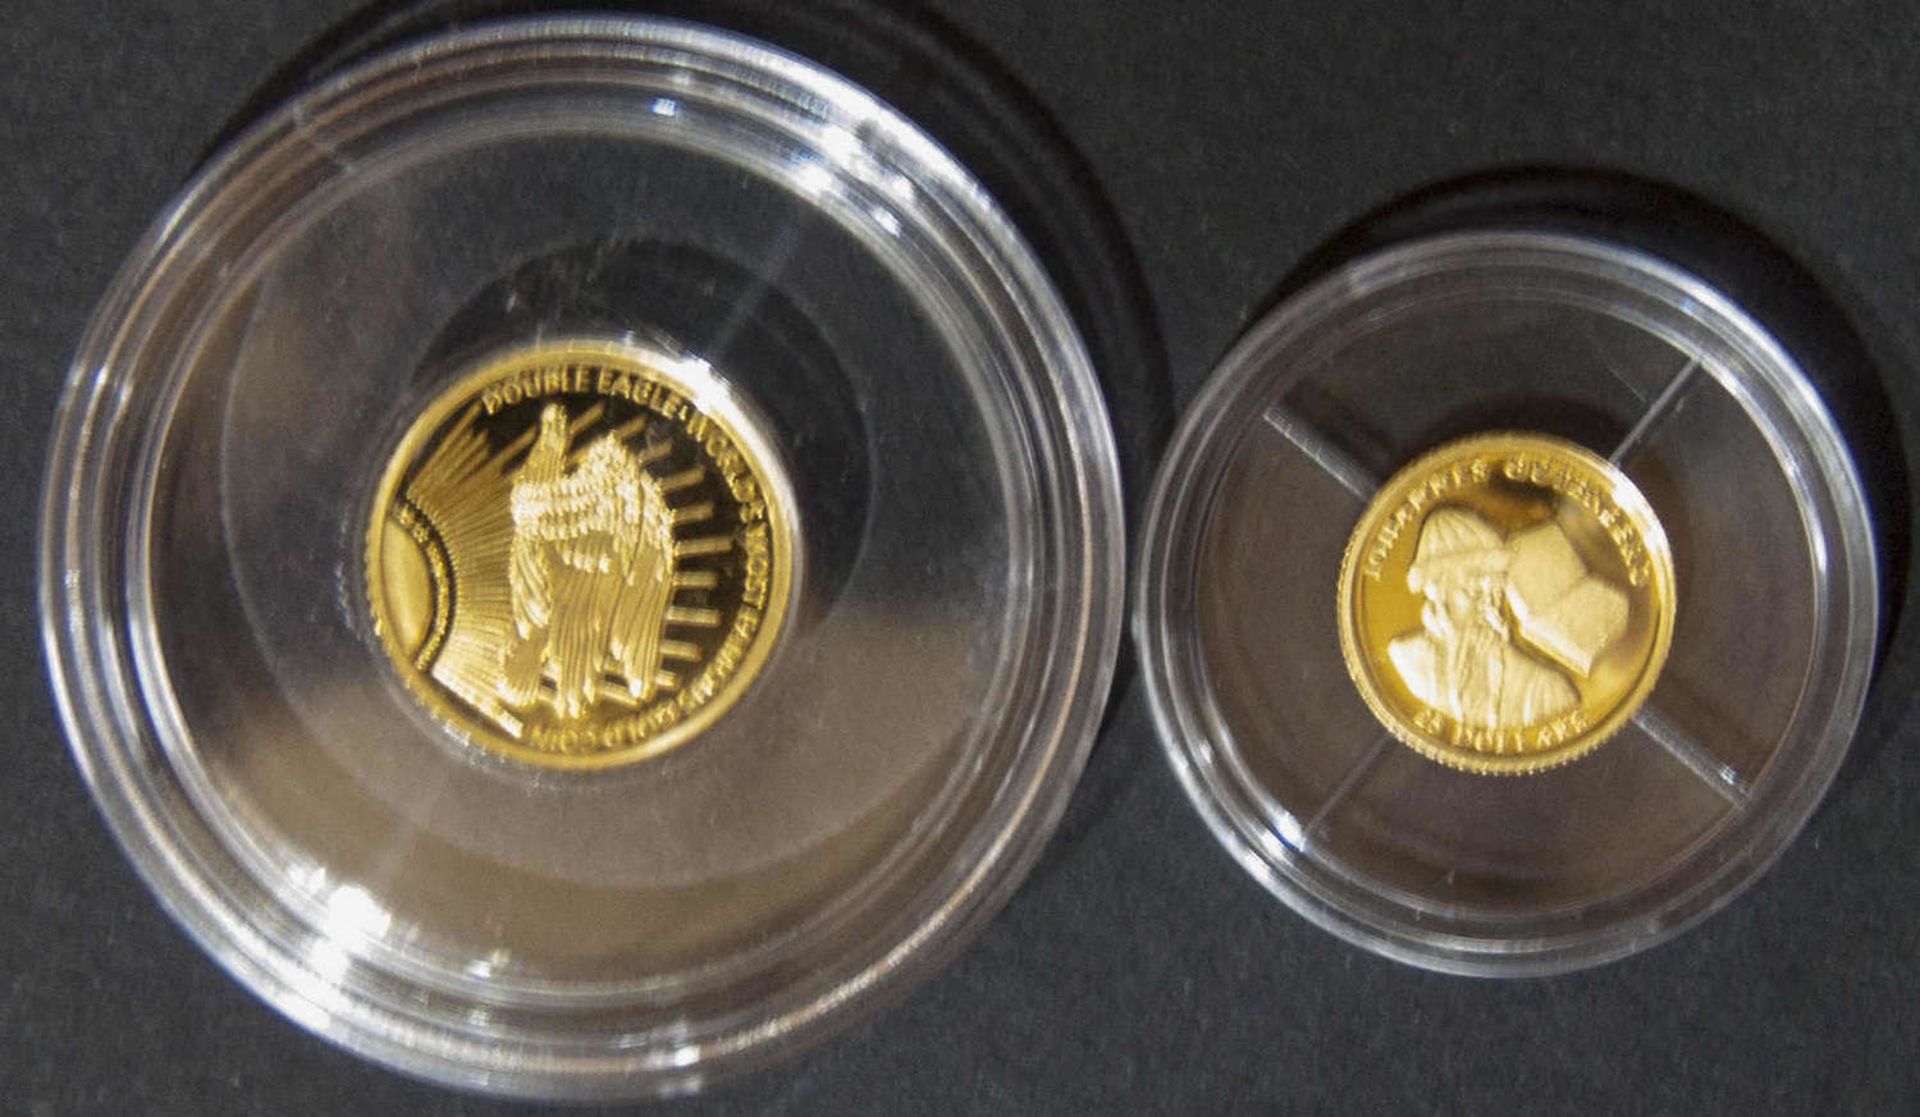 Liberia 2002/2005, 2 x "Die kleinsten Goldmünzen der Welt": 1 x 2002 25 Dollar "Gutenberg", Gold